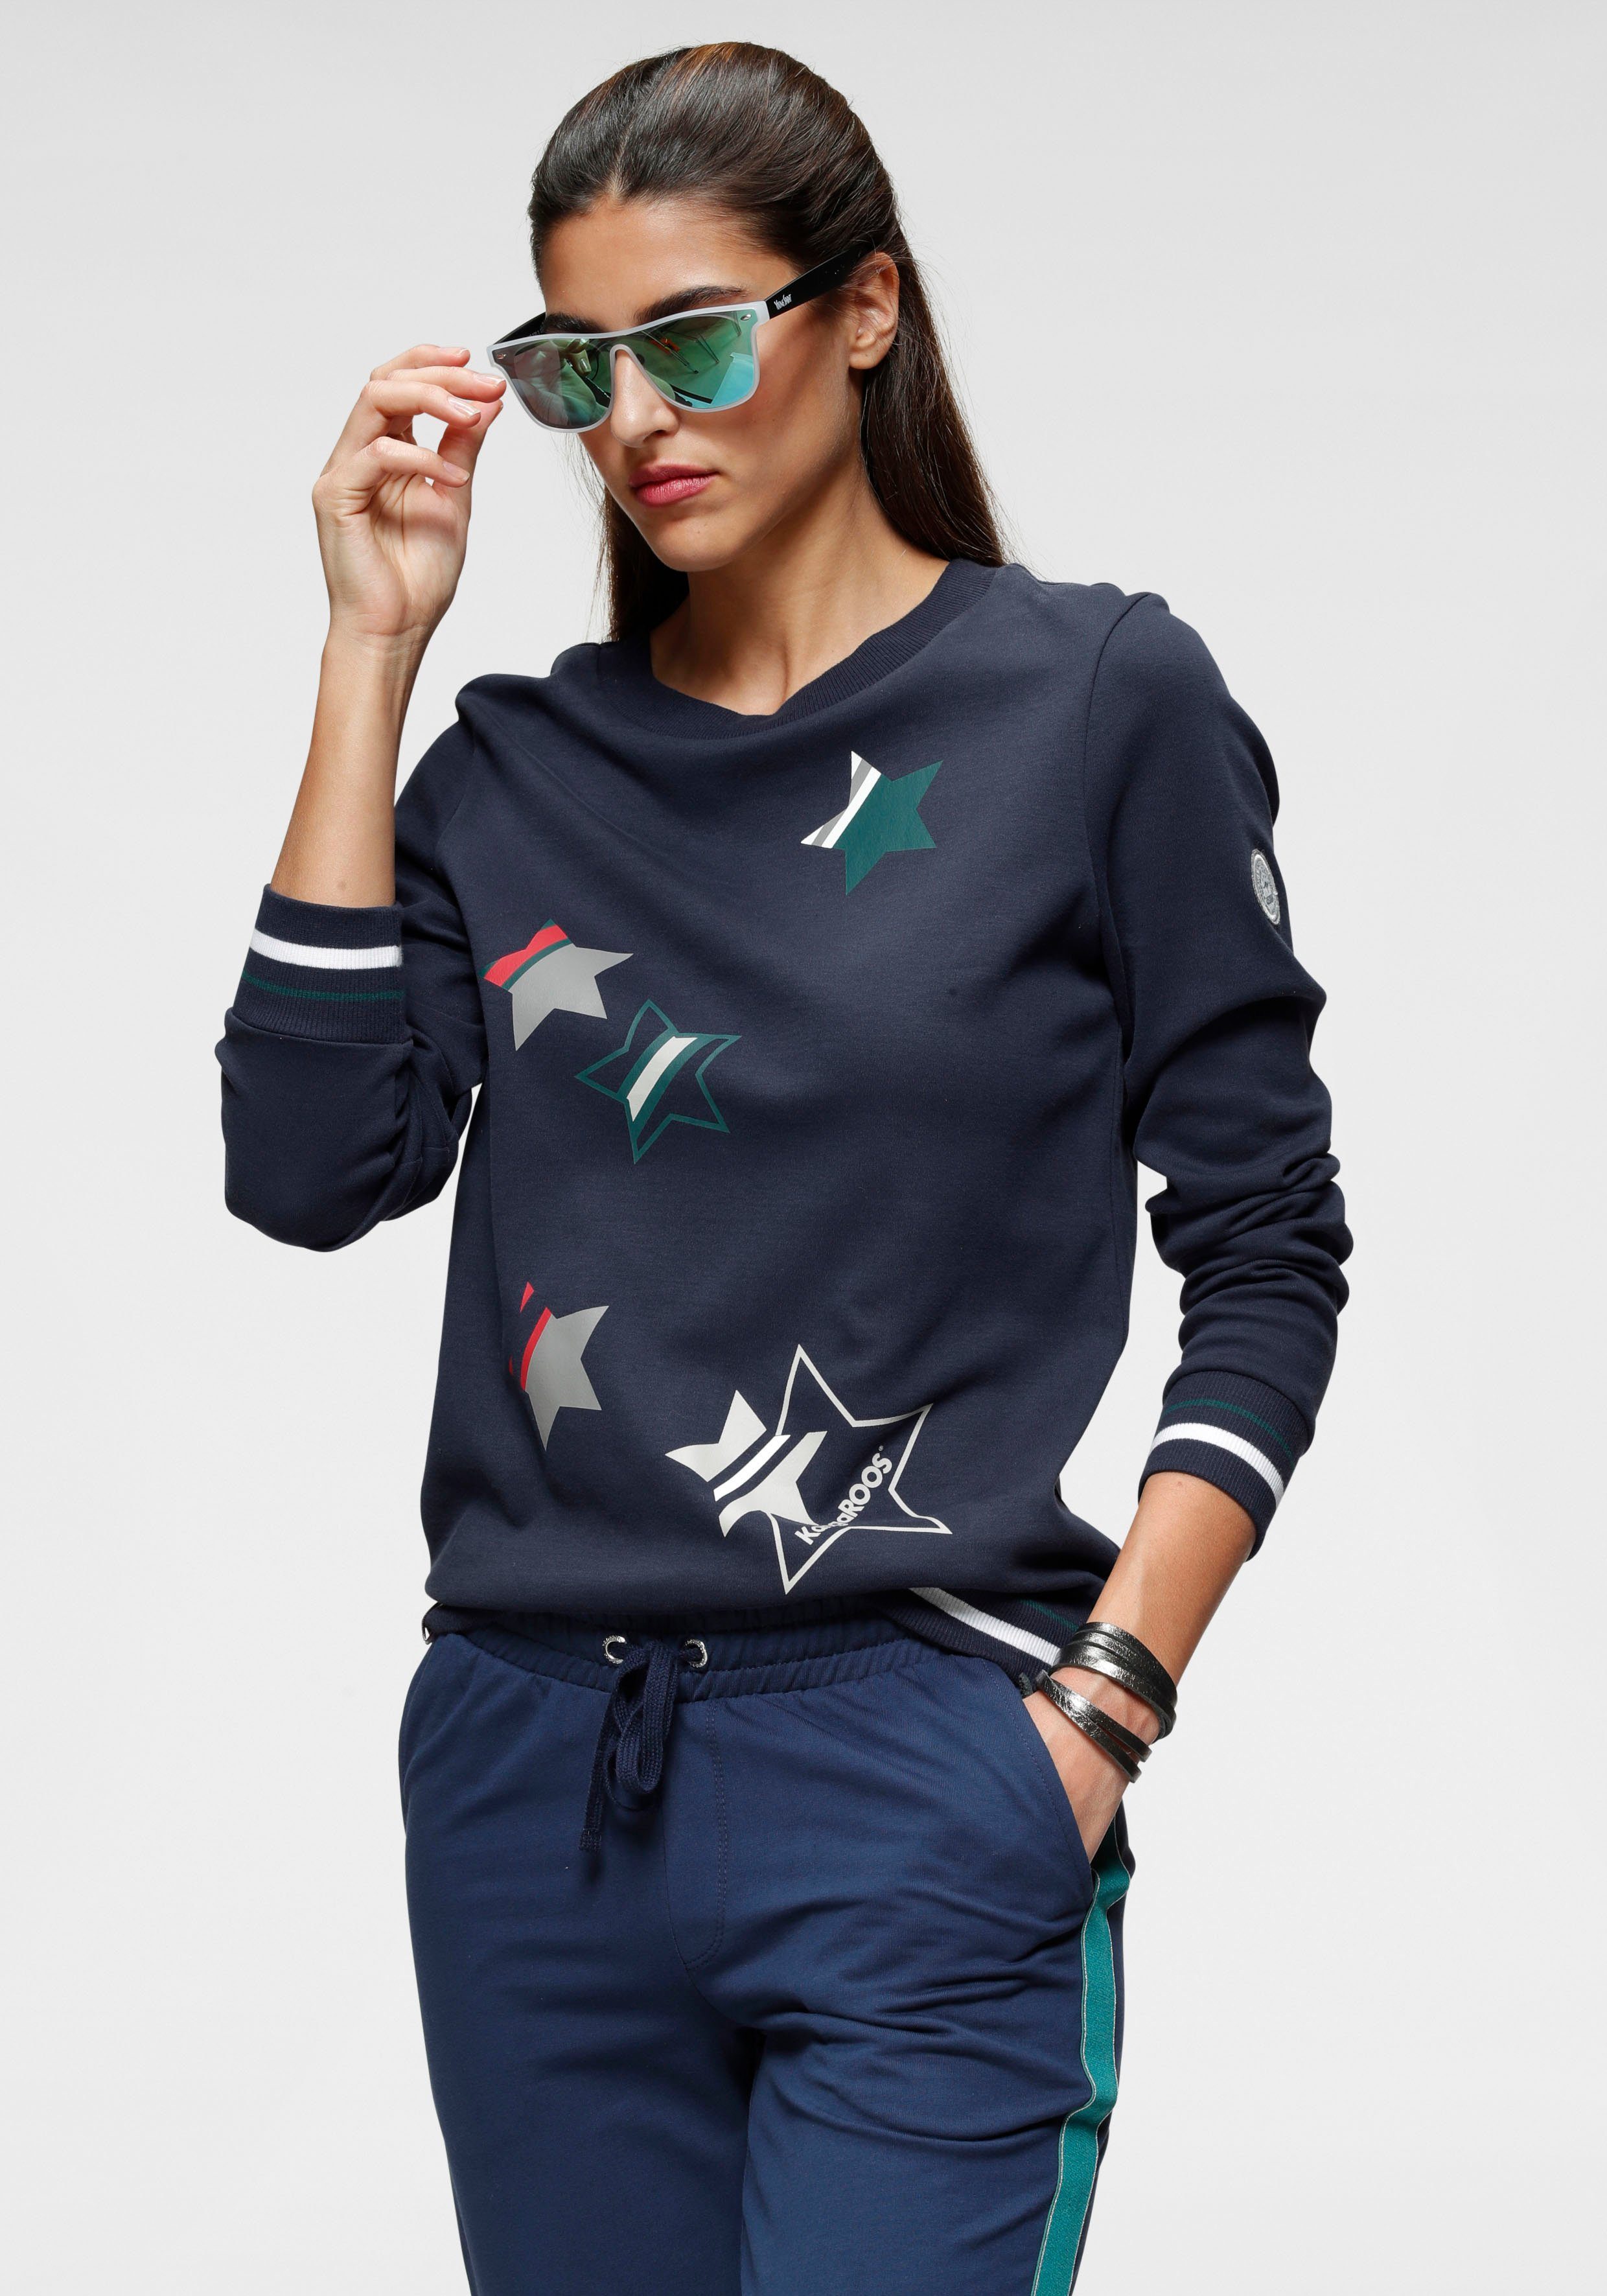 KangaROOS Sweater mit süßen Sternchen-Drucken